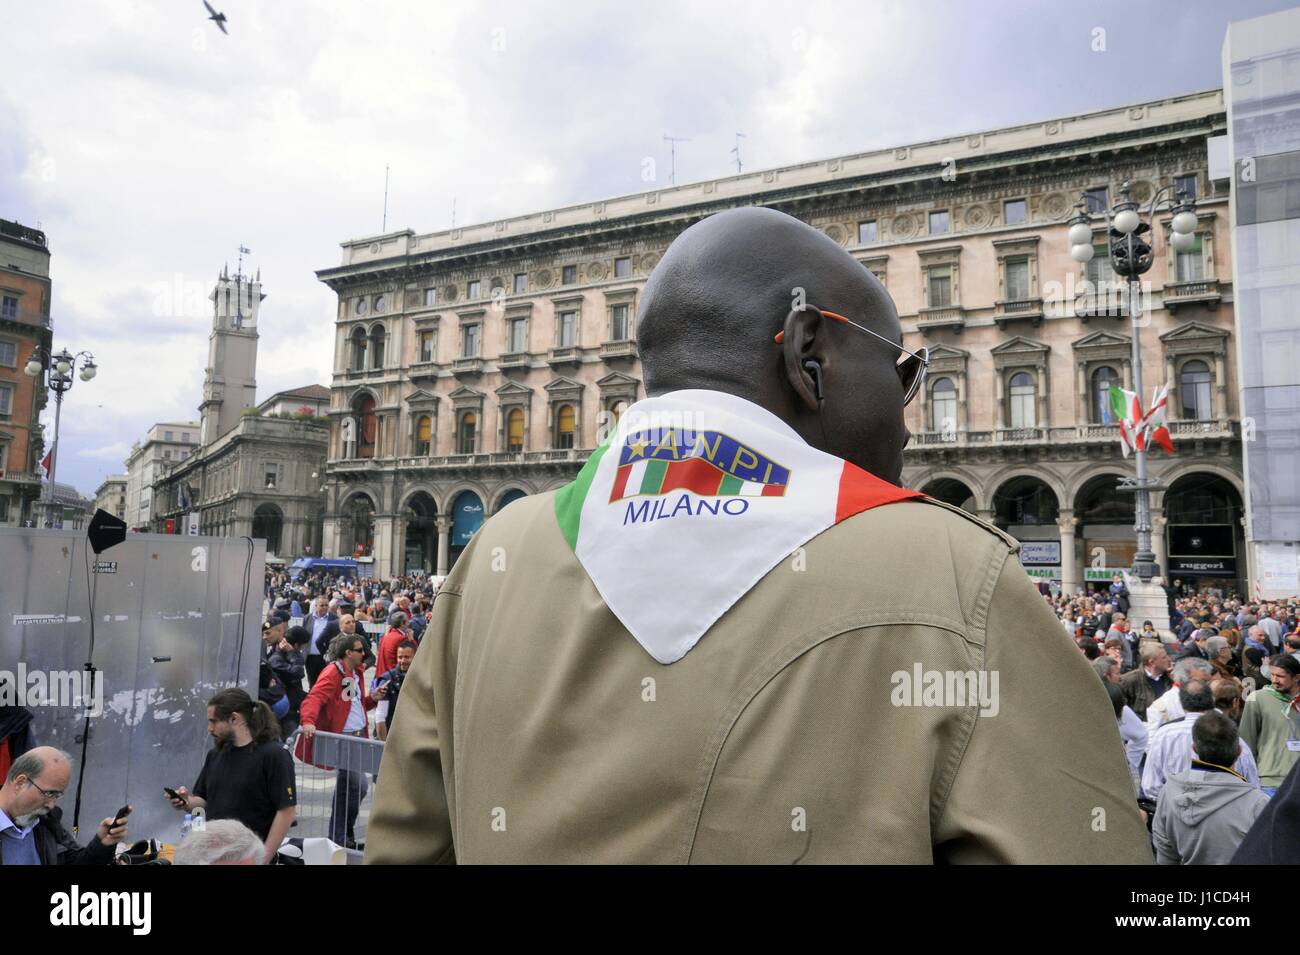 El 25 de abril se celebra anualmente en toda Italia, con fiestas y manifestaciones para recordar la liberación del nazi-fascismo. Foto de stock